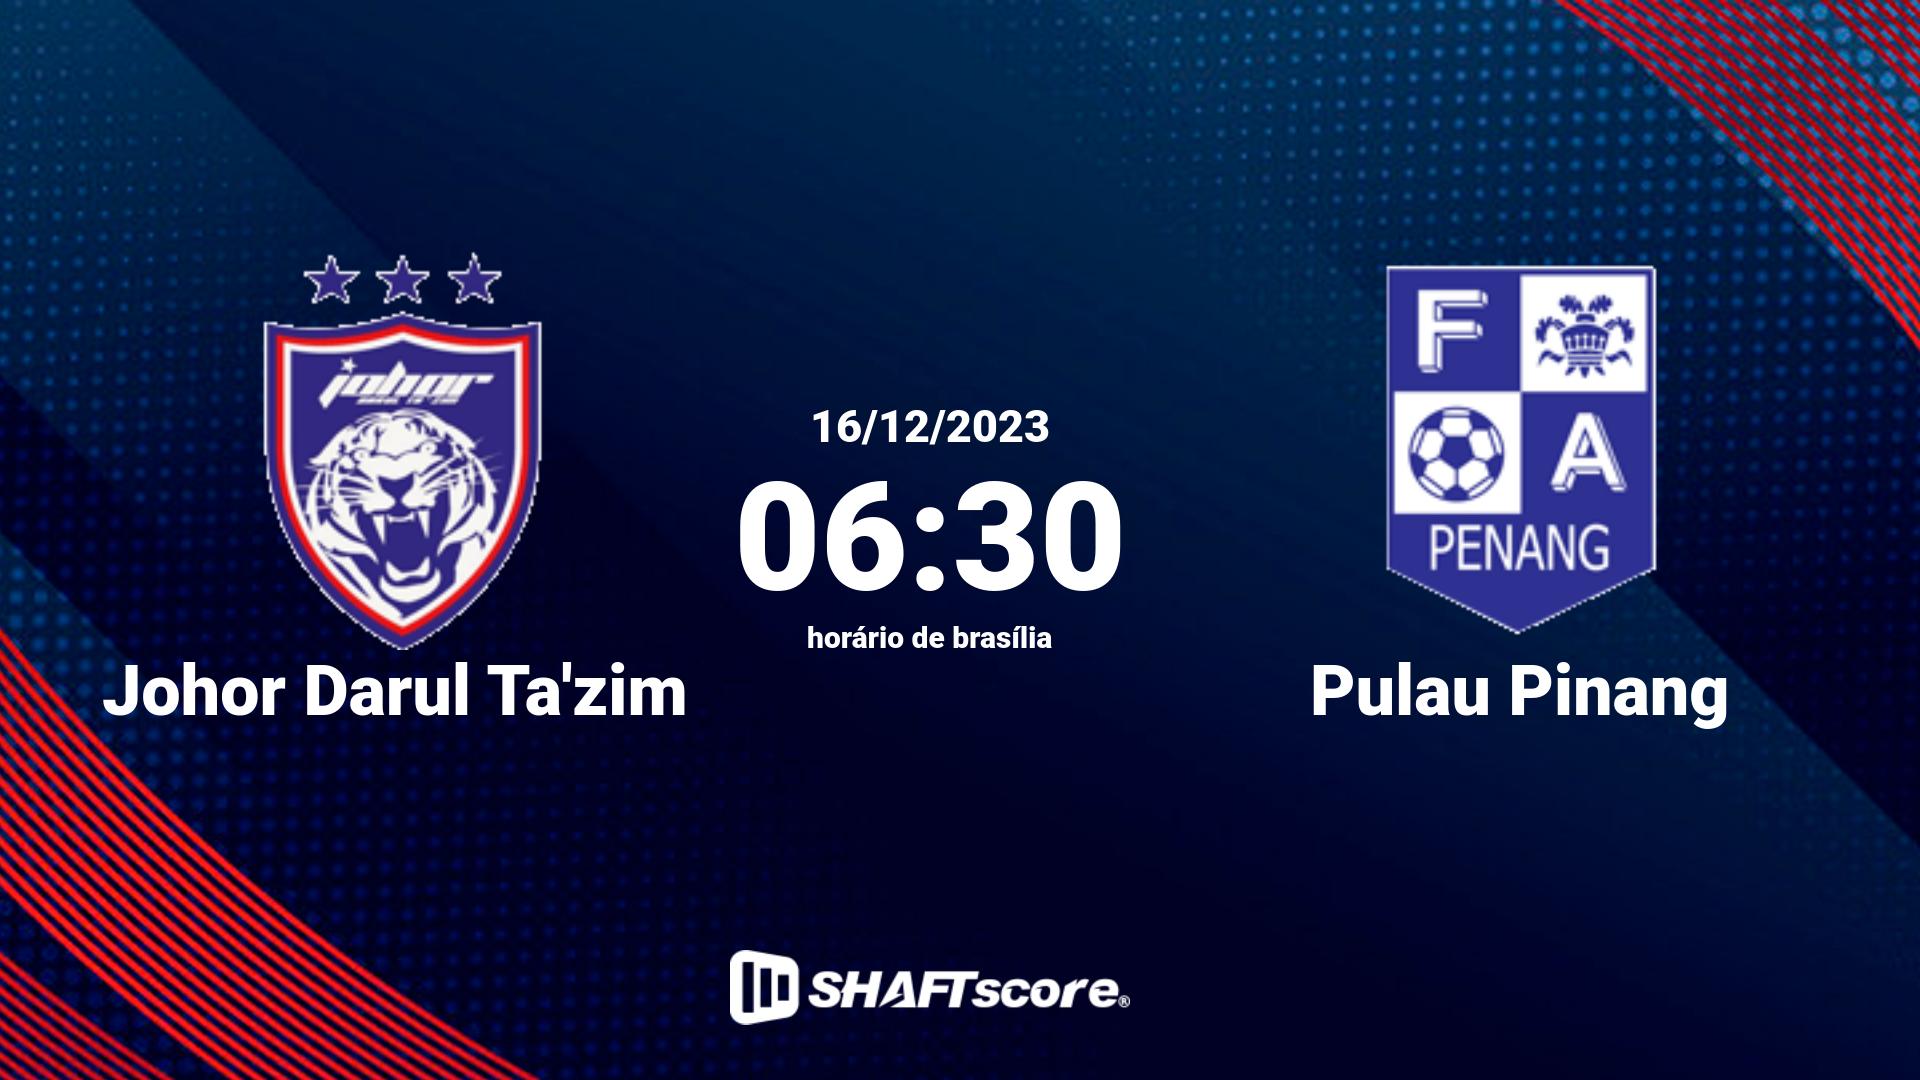 Estatísticas do jogo Johor Darul Ta'zim vs Pulau Pinang 16.12 06:30